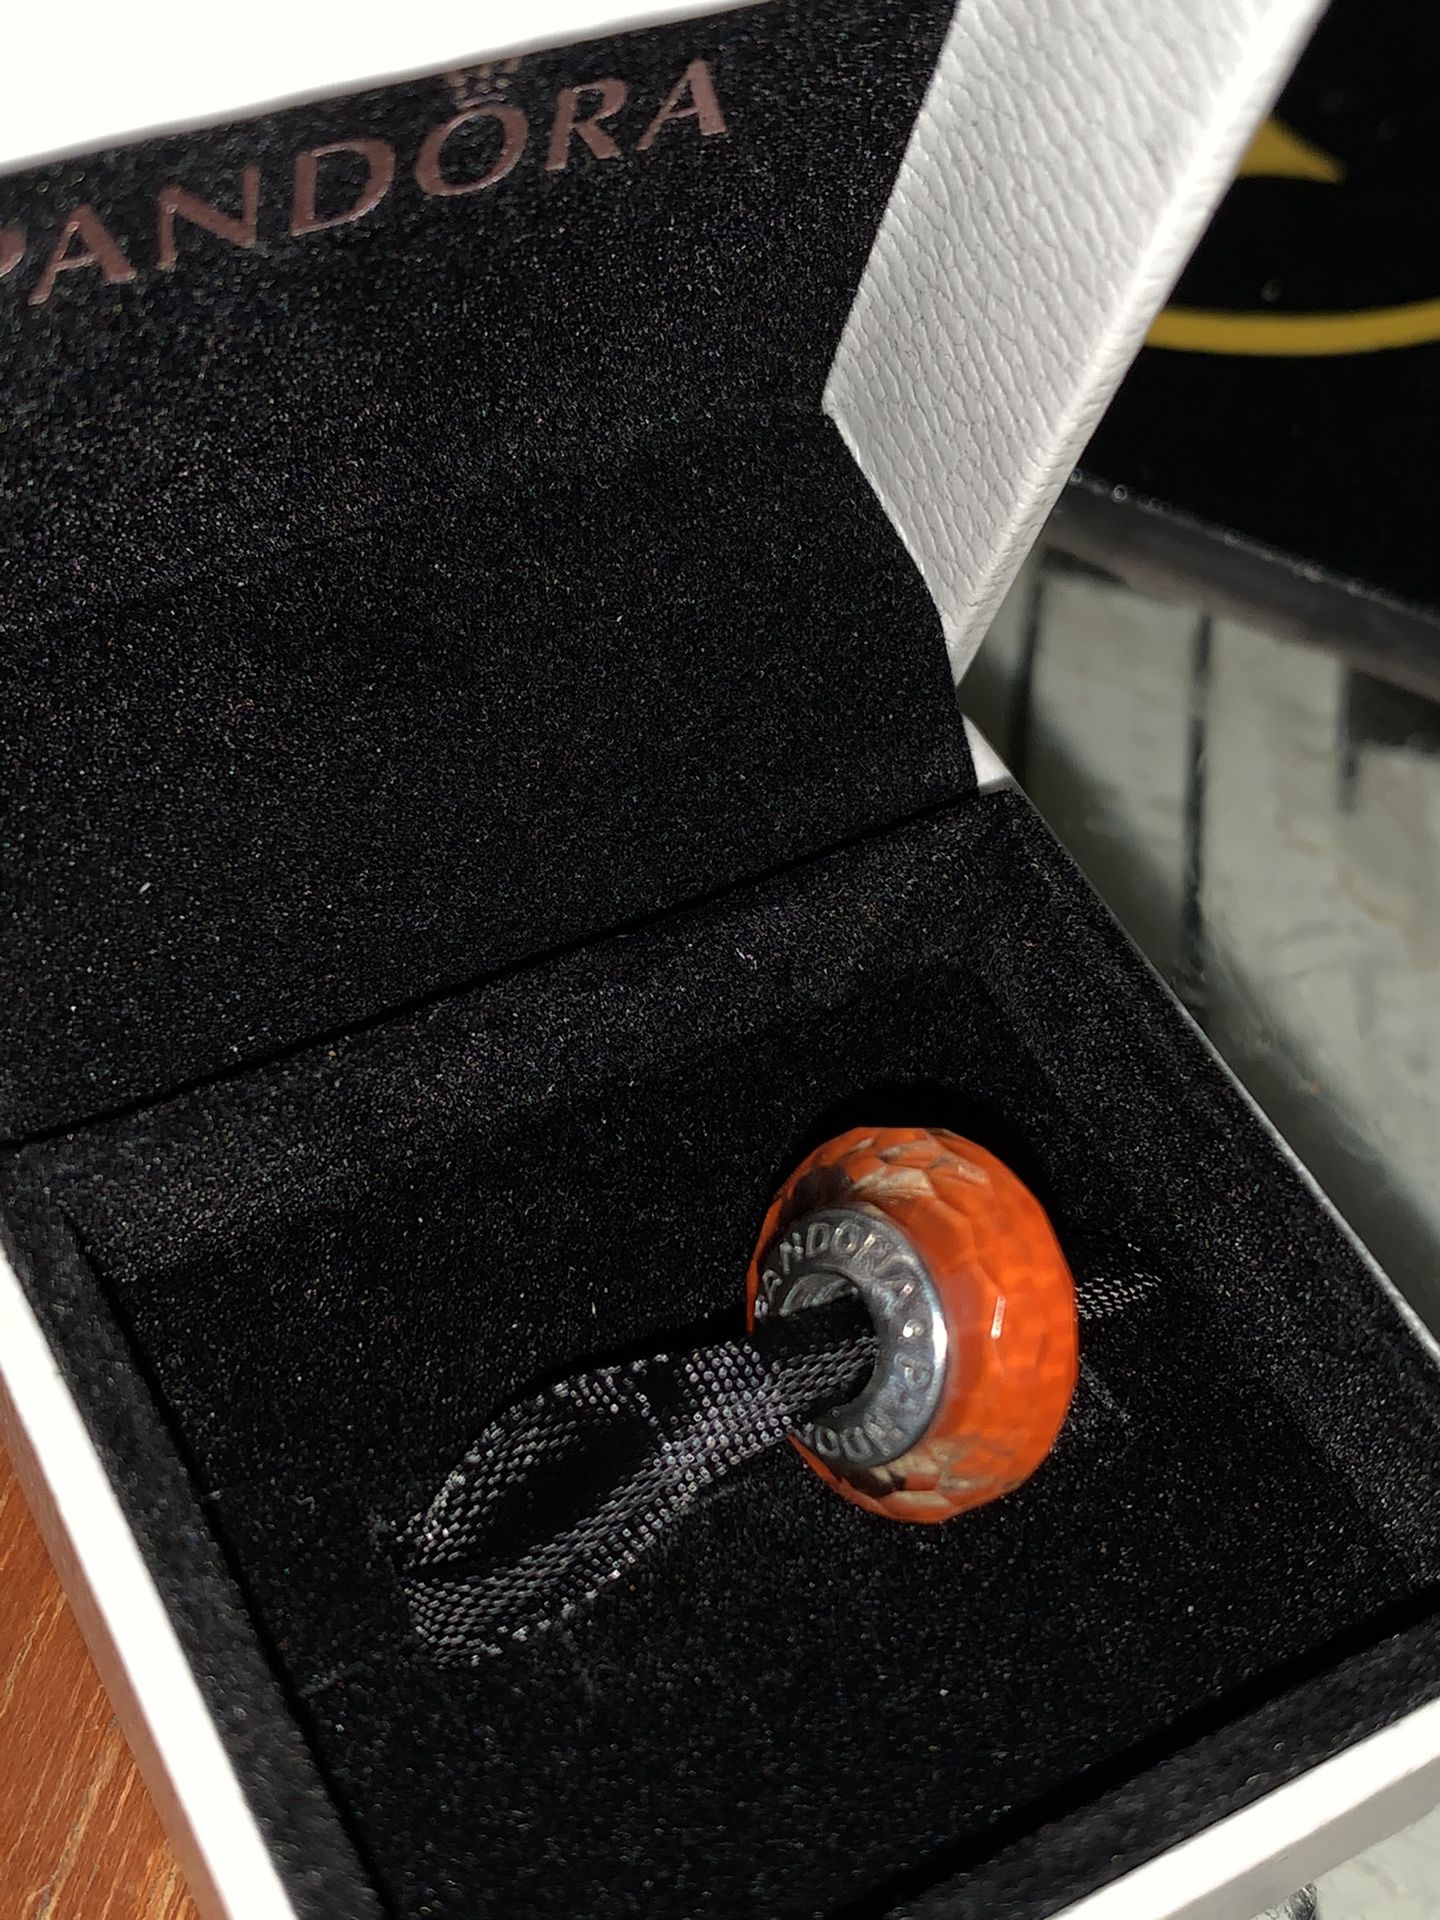 Pandora Retired “Fascinating Orange” Murano Glass Charm!